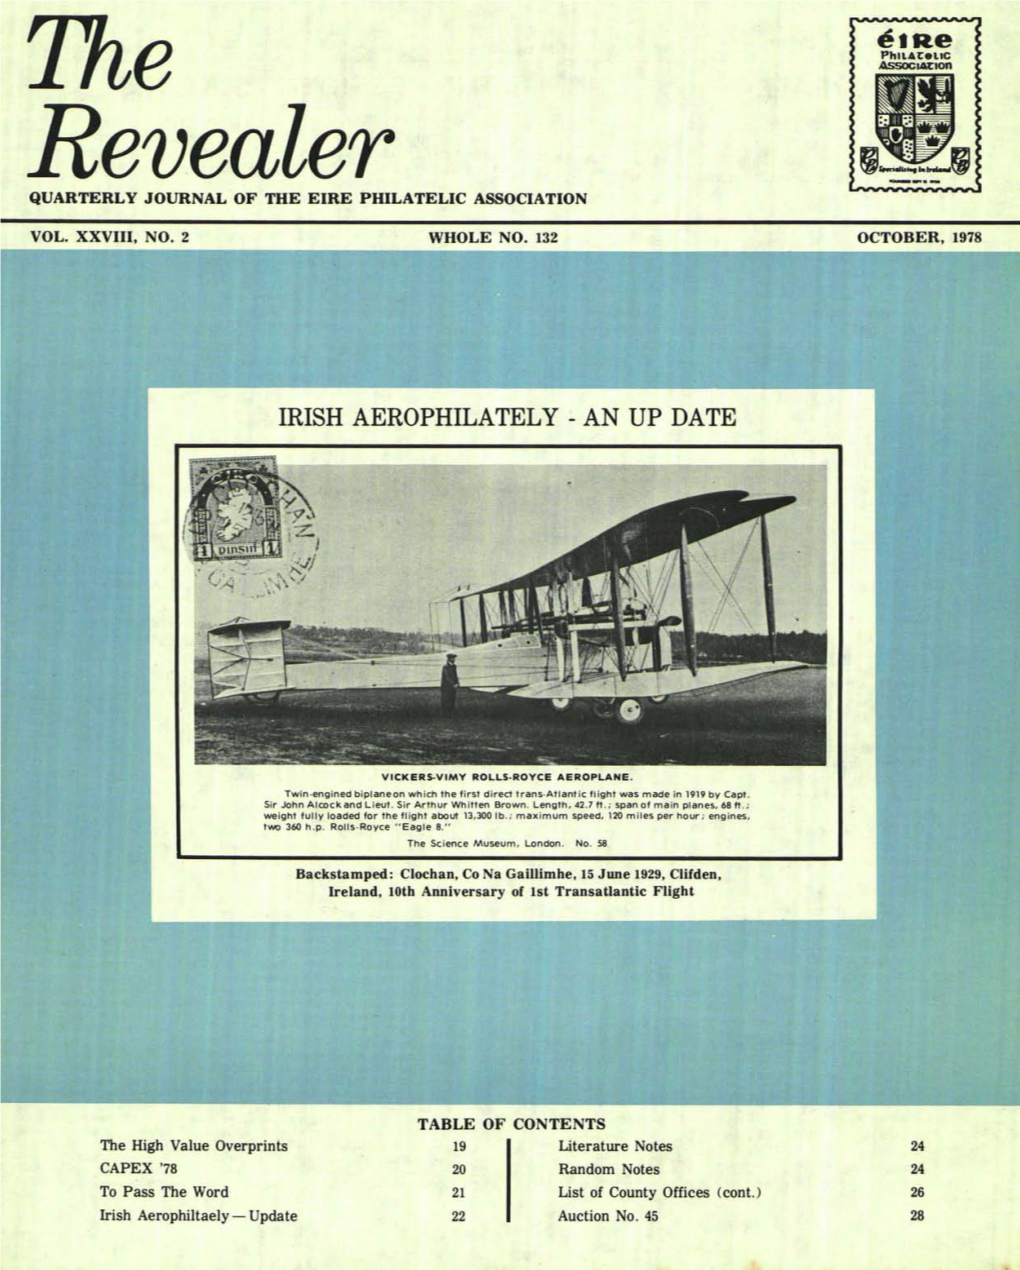 The Revealer October, 1978 the REVEALER the PRESIDENT's NOTES